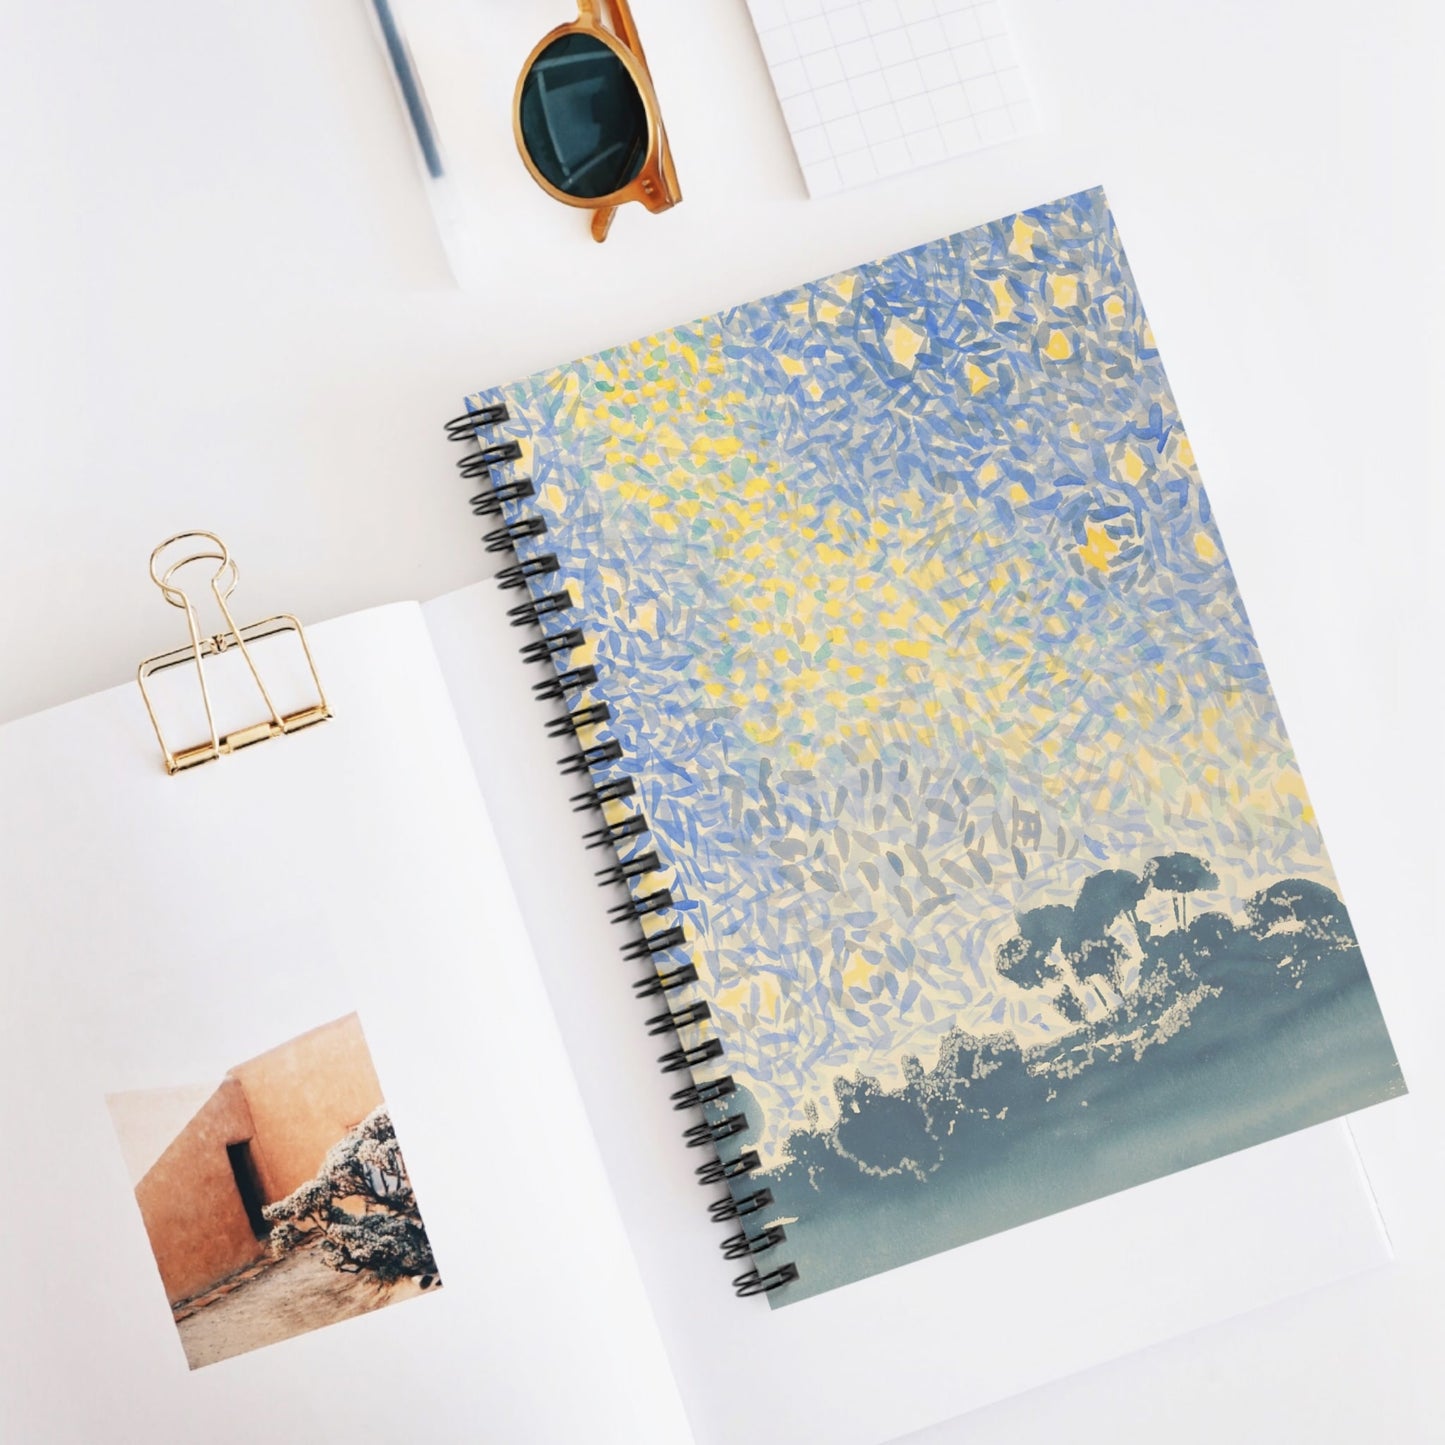 Starry Sky Spiral Notebook Displayed on Desk